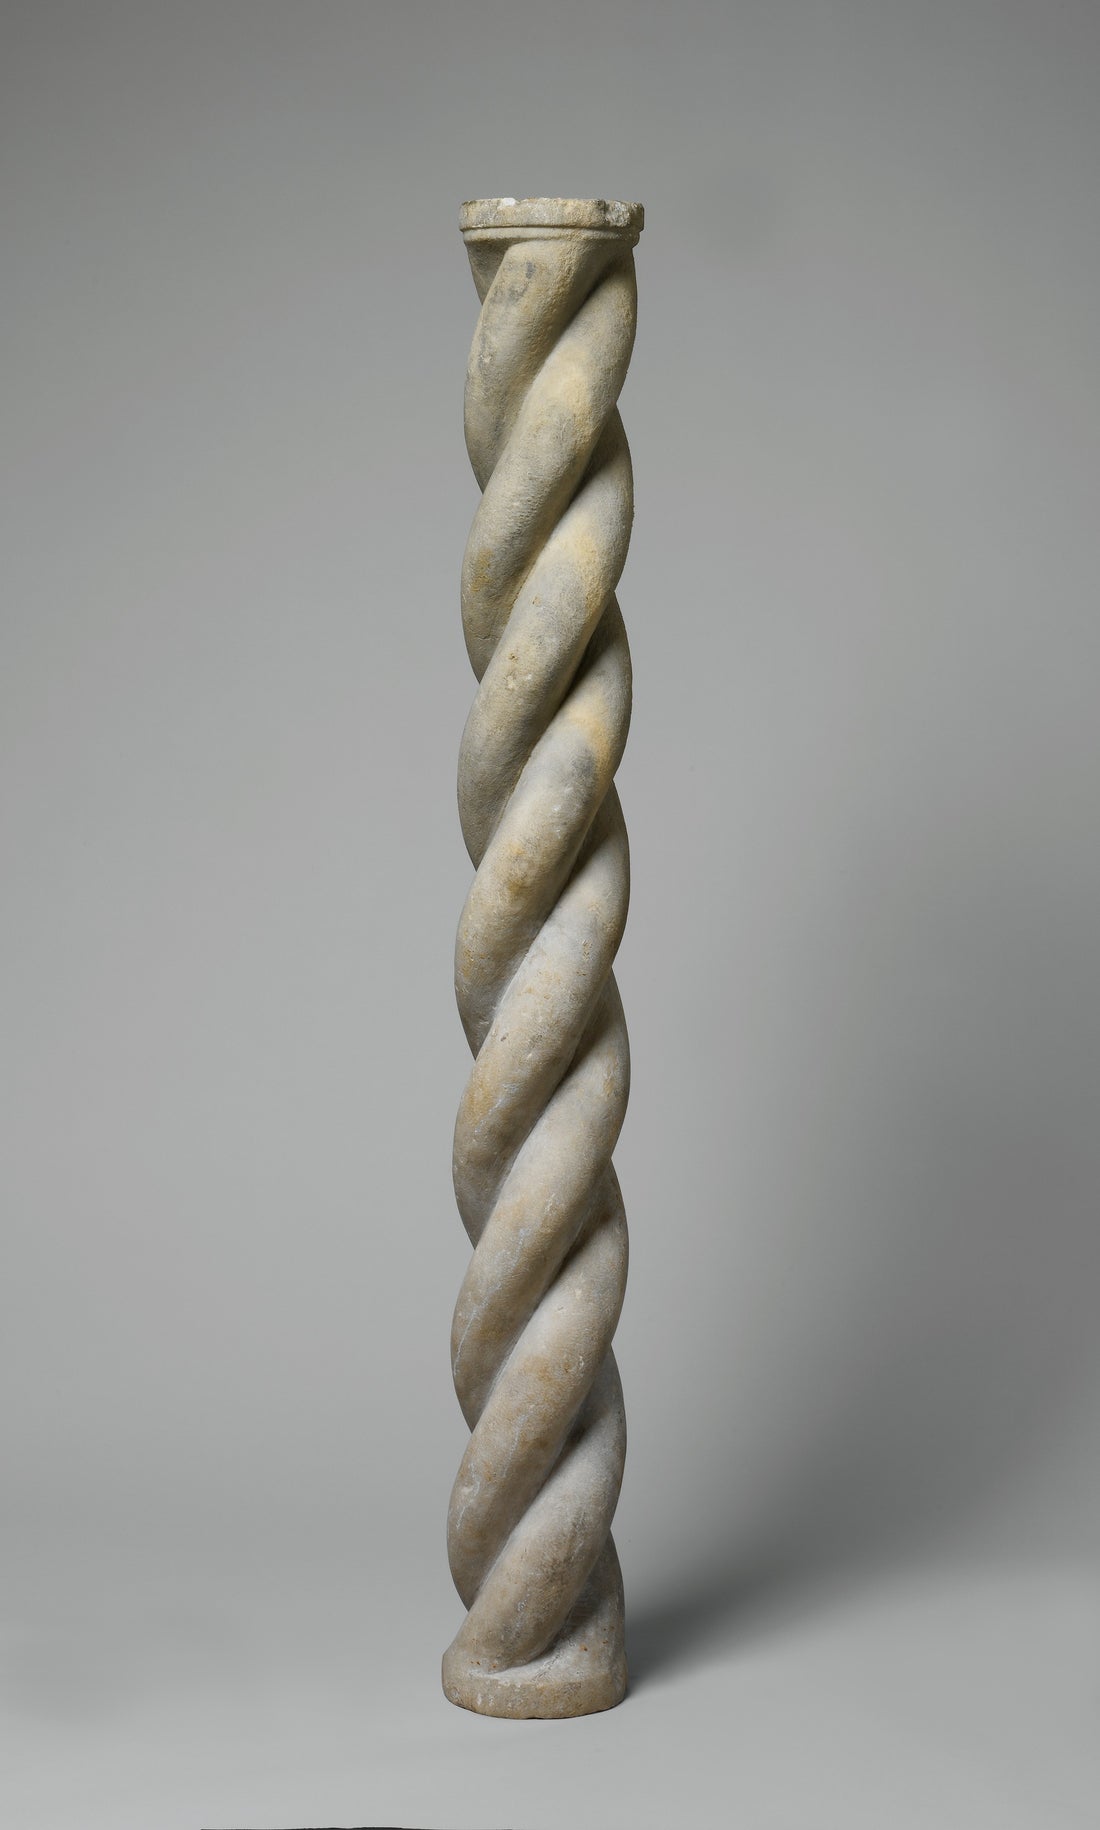 Byzantine Spiral Column Shaft, 13th century